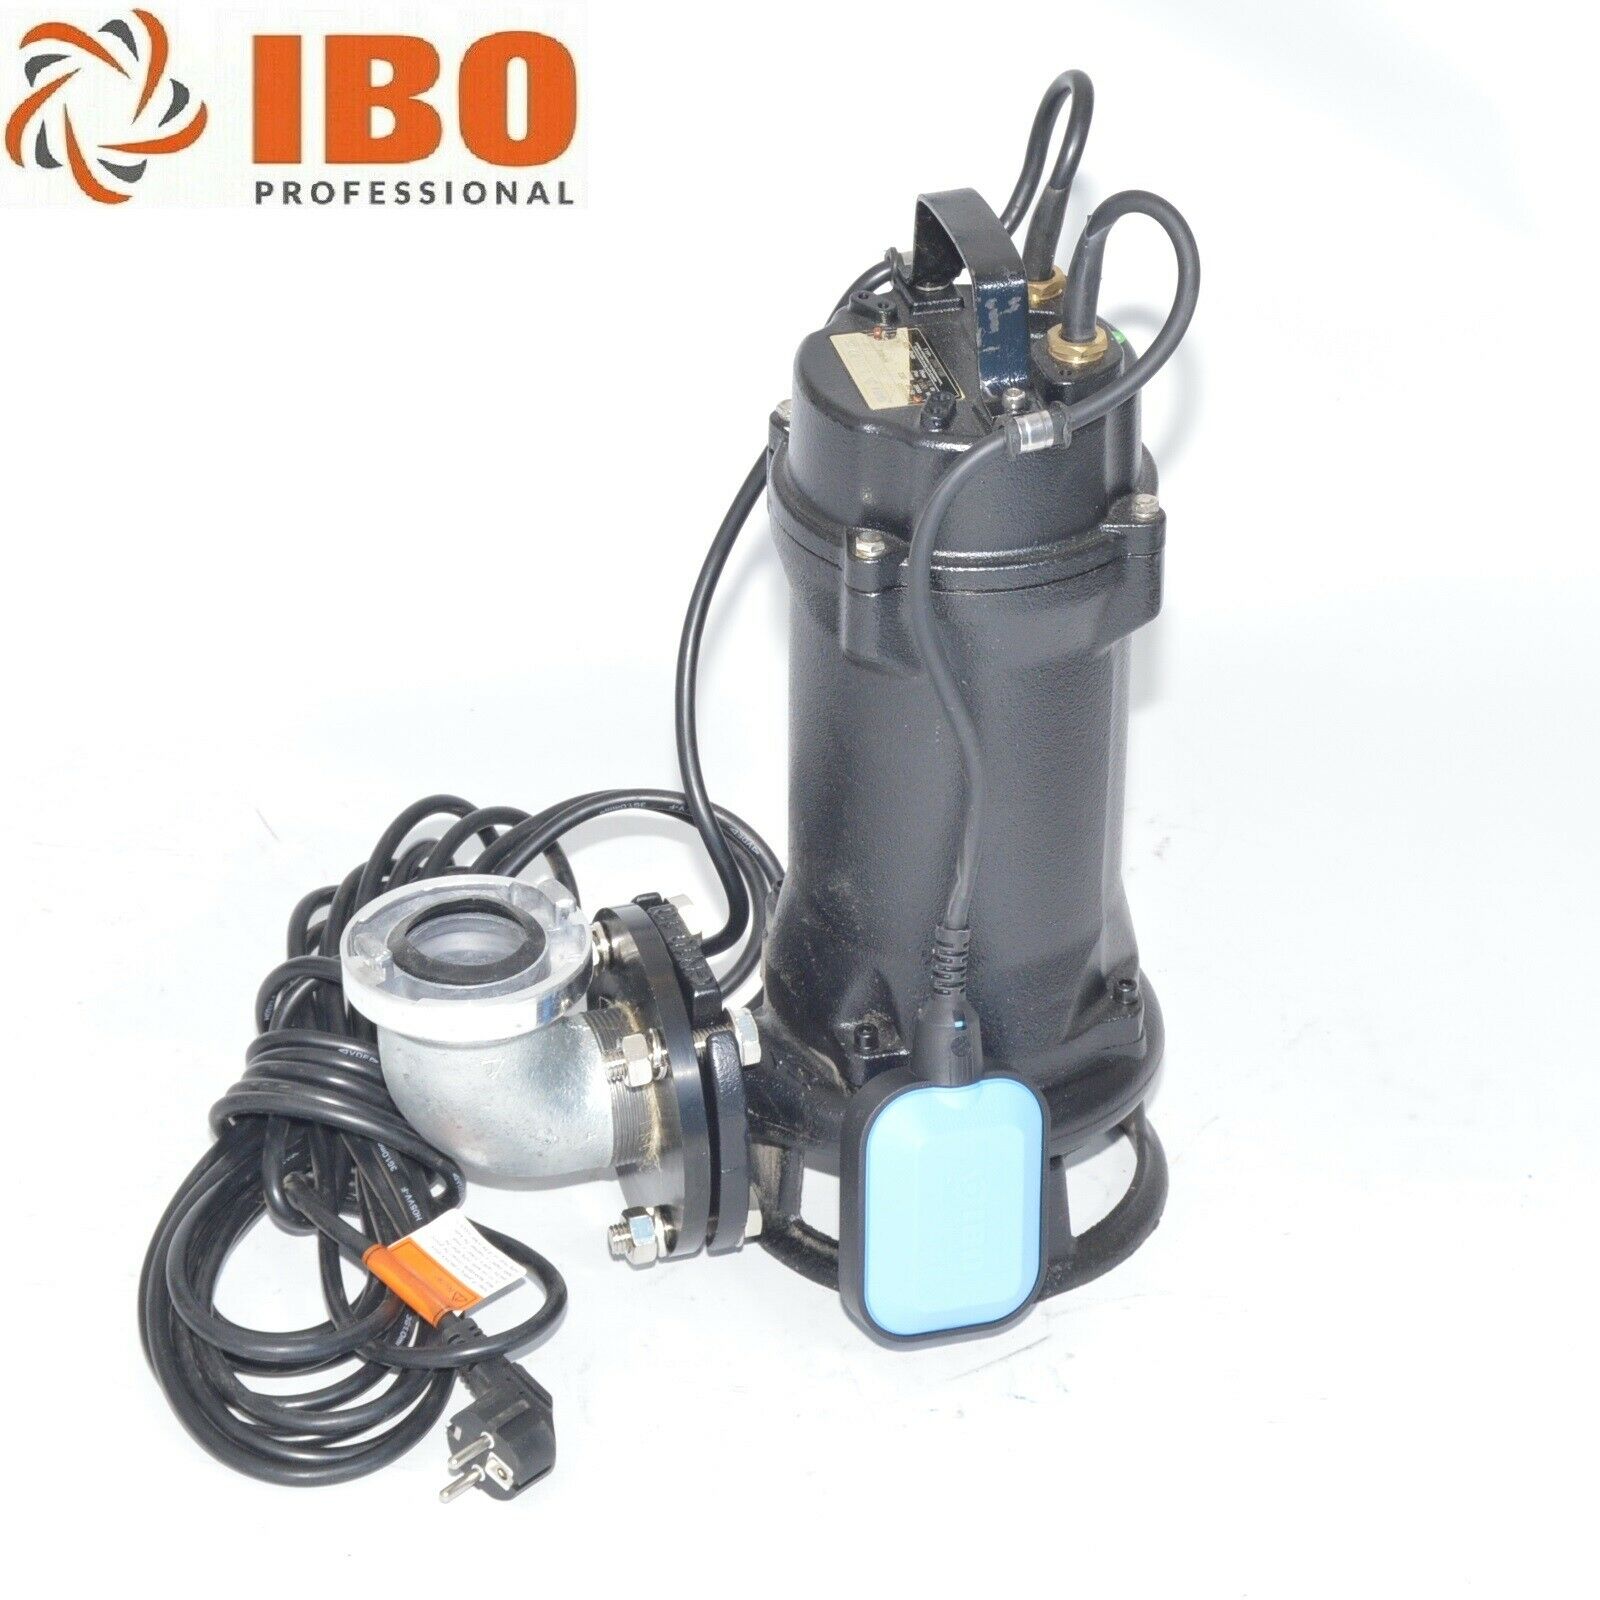 Industrie Fäkalienpumpe Schmutzwasserpumpe mit Schneidwerk 230V - 1,1kW, Schmutzwasser- / Tauchpumpen, Pumpen